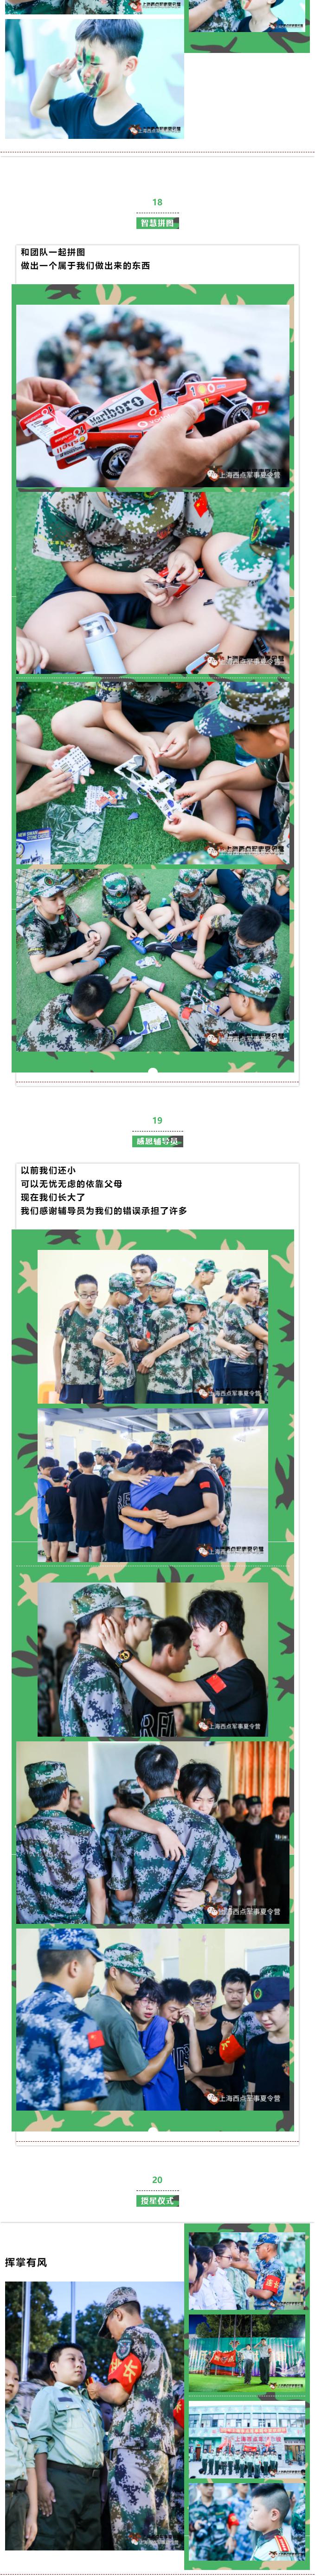 上海西点军事夏令营课程精彩回顾和活动照片